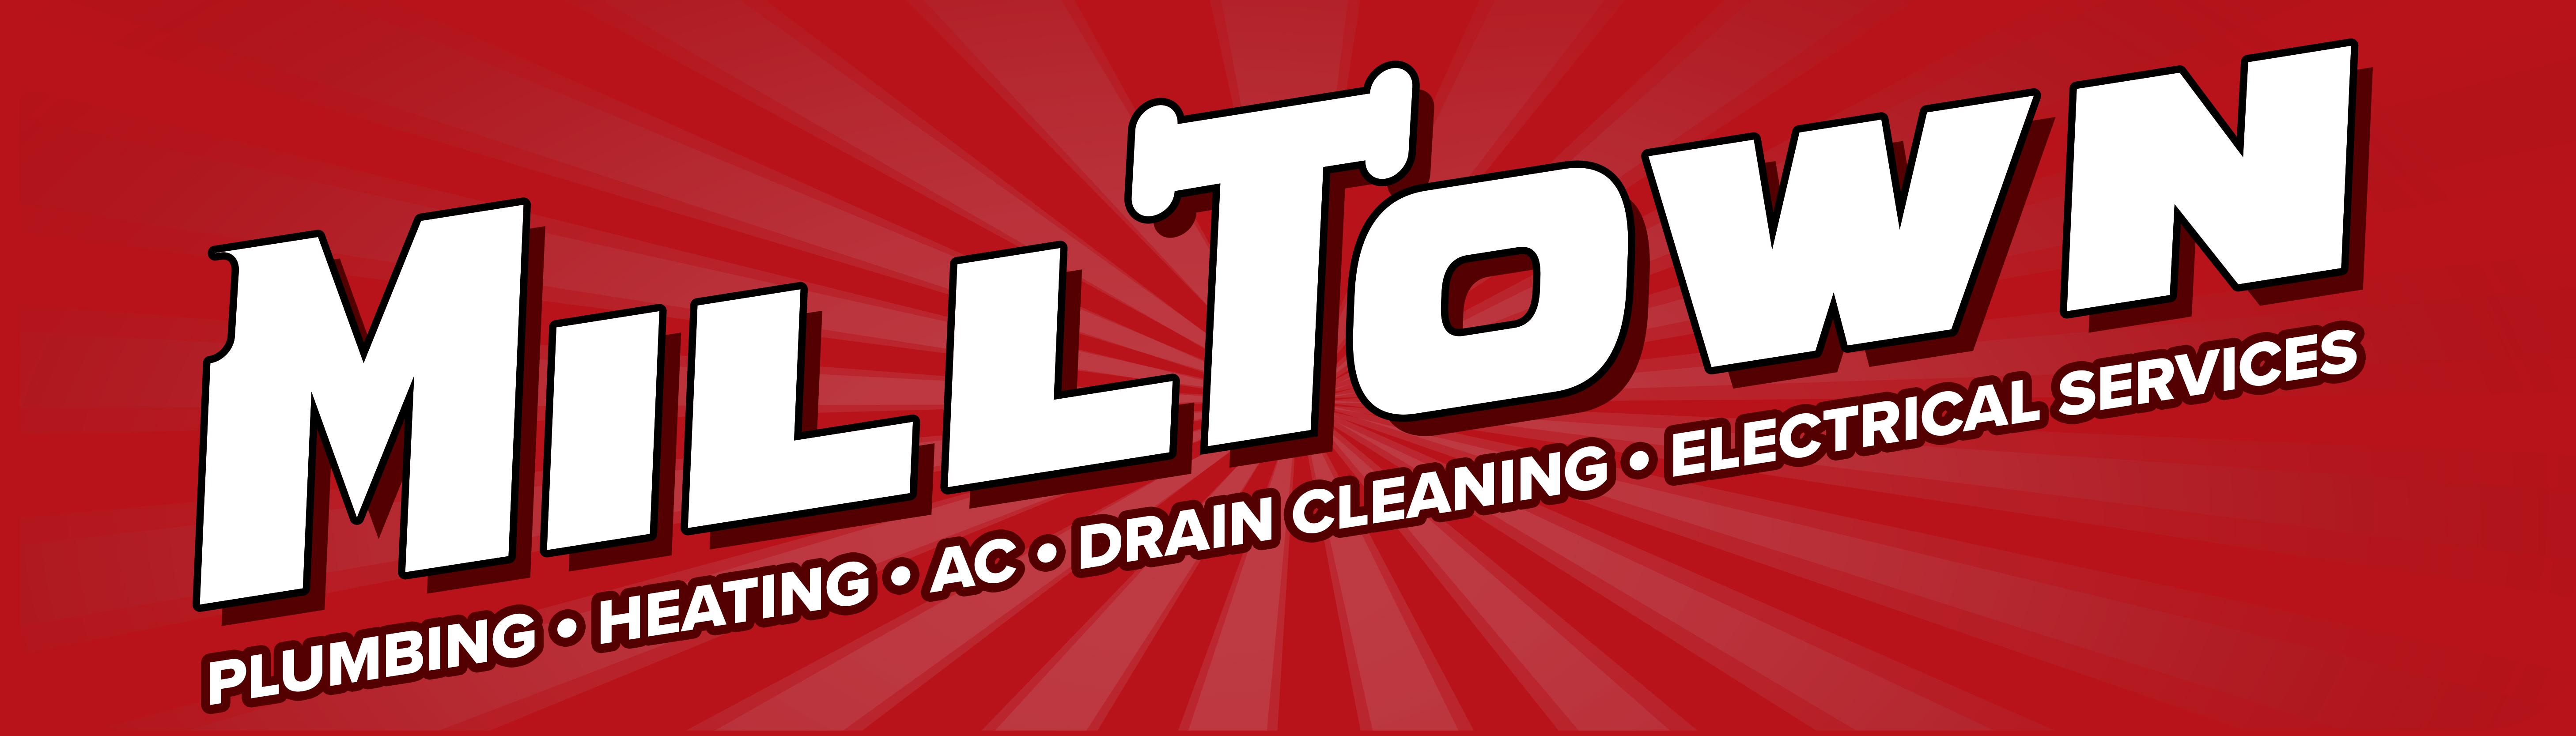 Milltown Plumbing & Heating, Inc. Logo